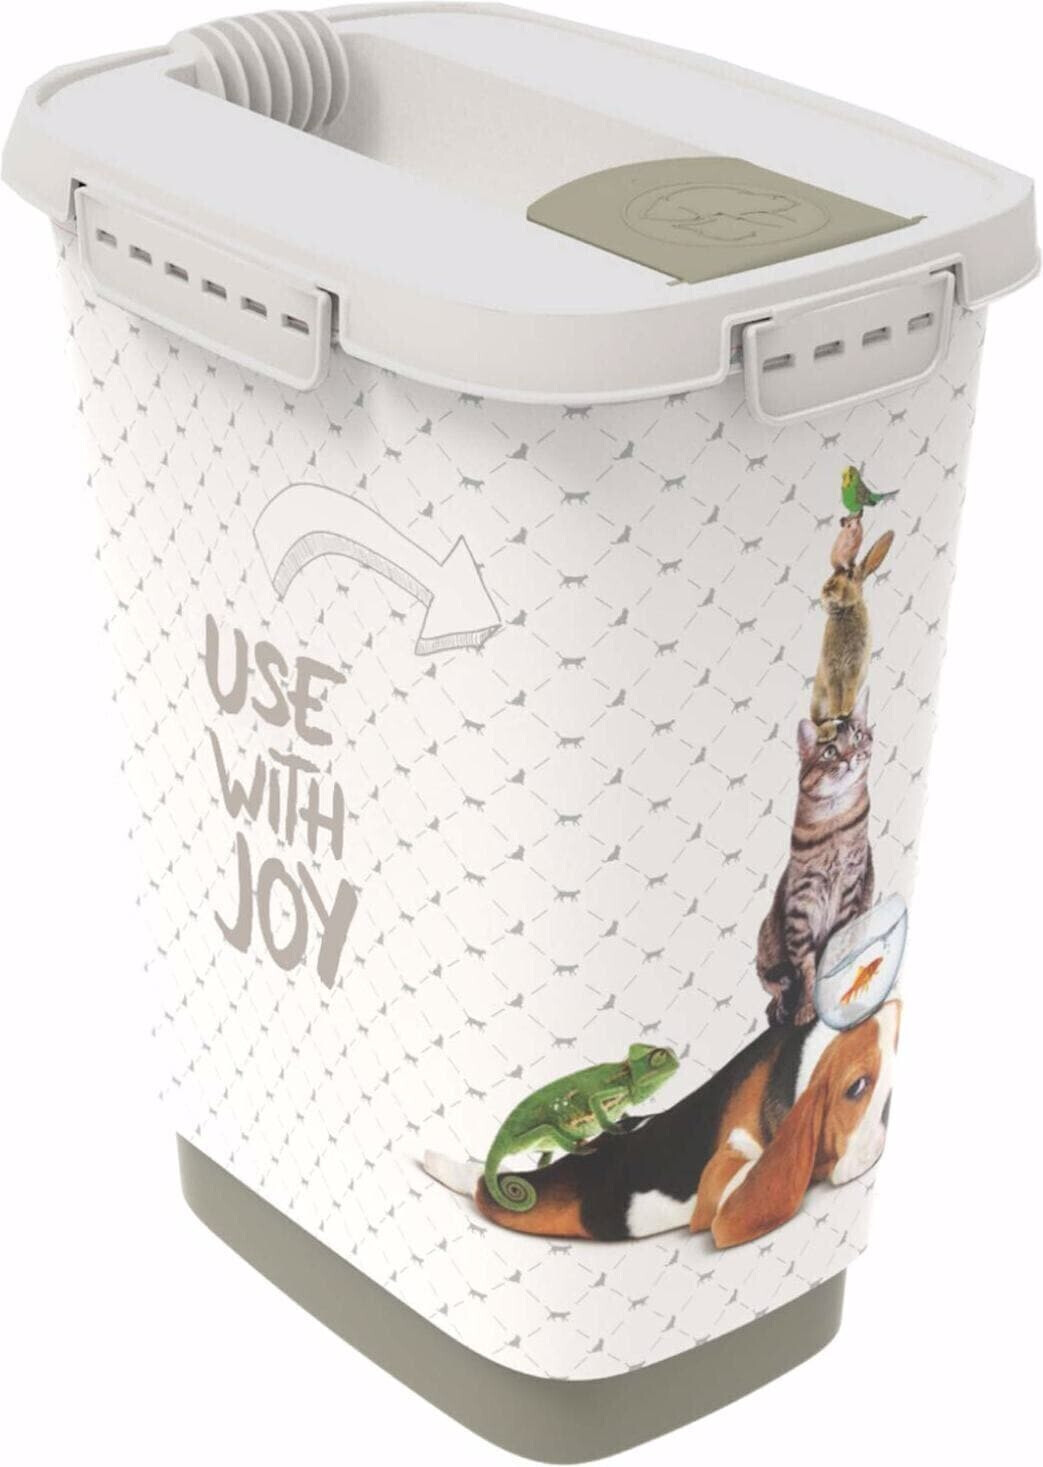 Rotho Dry food container Use with joy 10L au meilleur prix sur